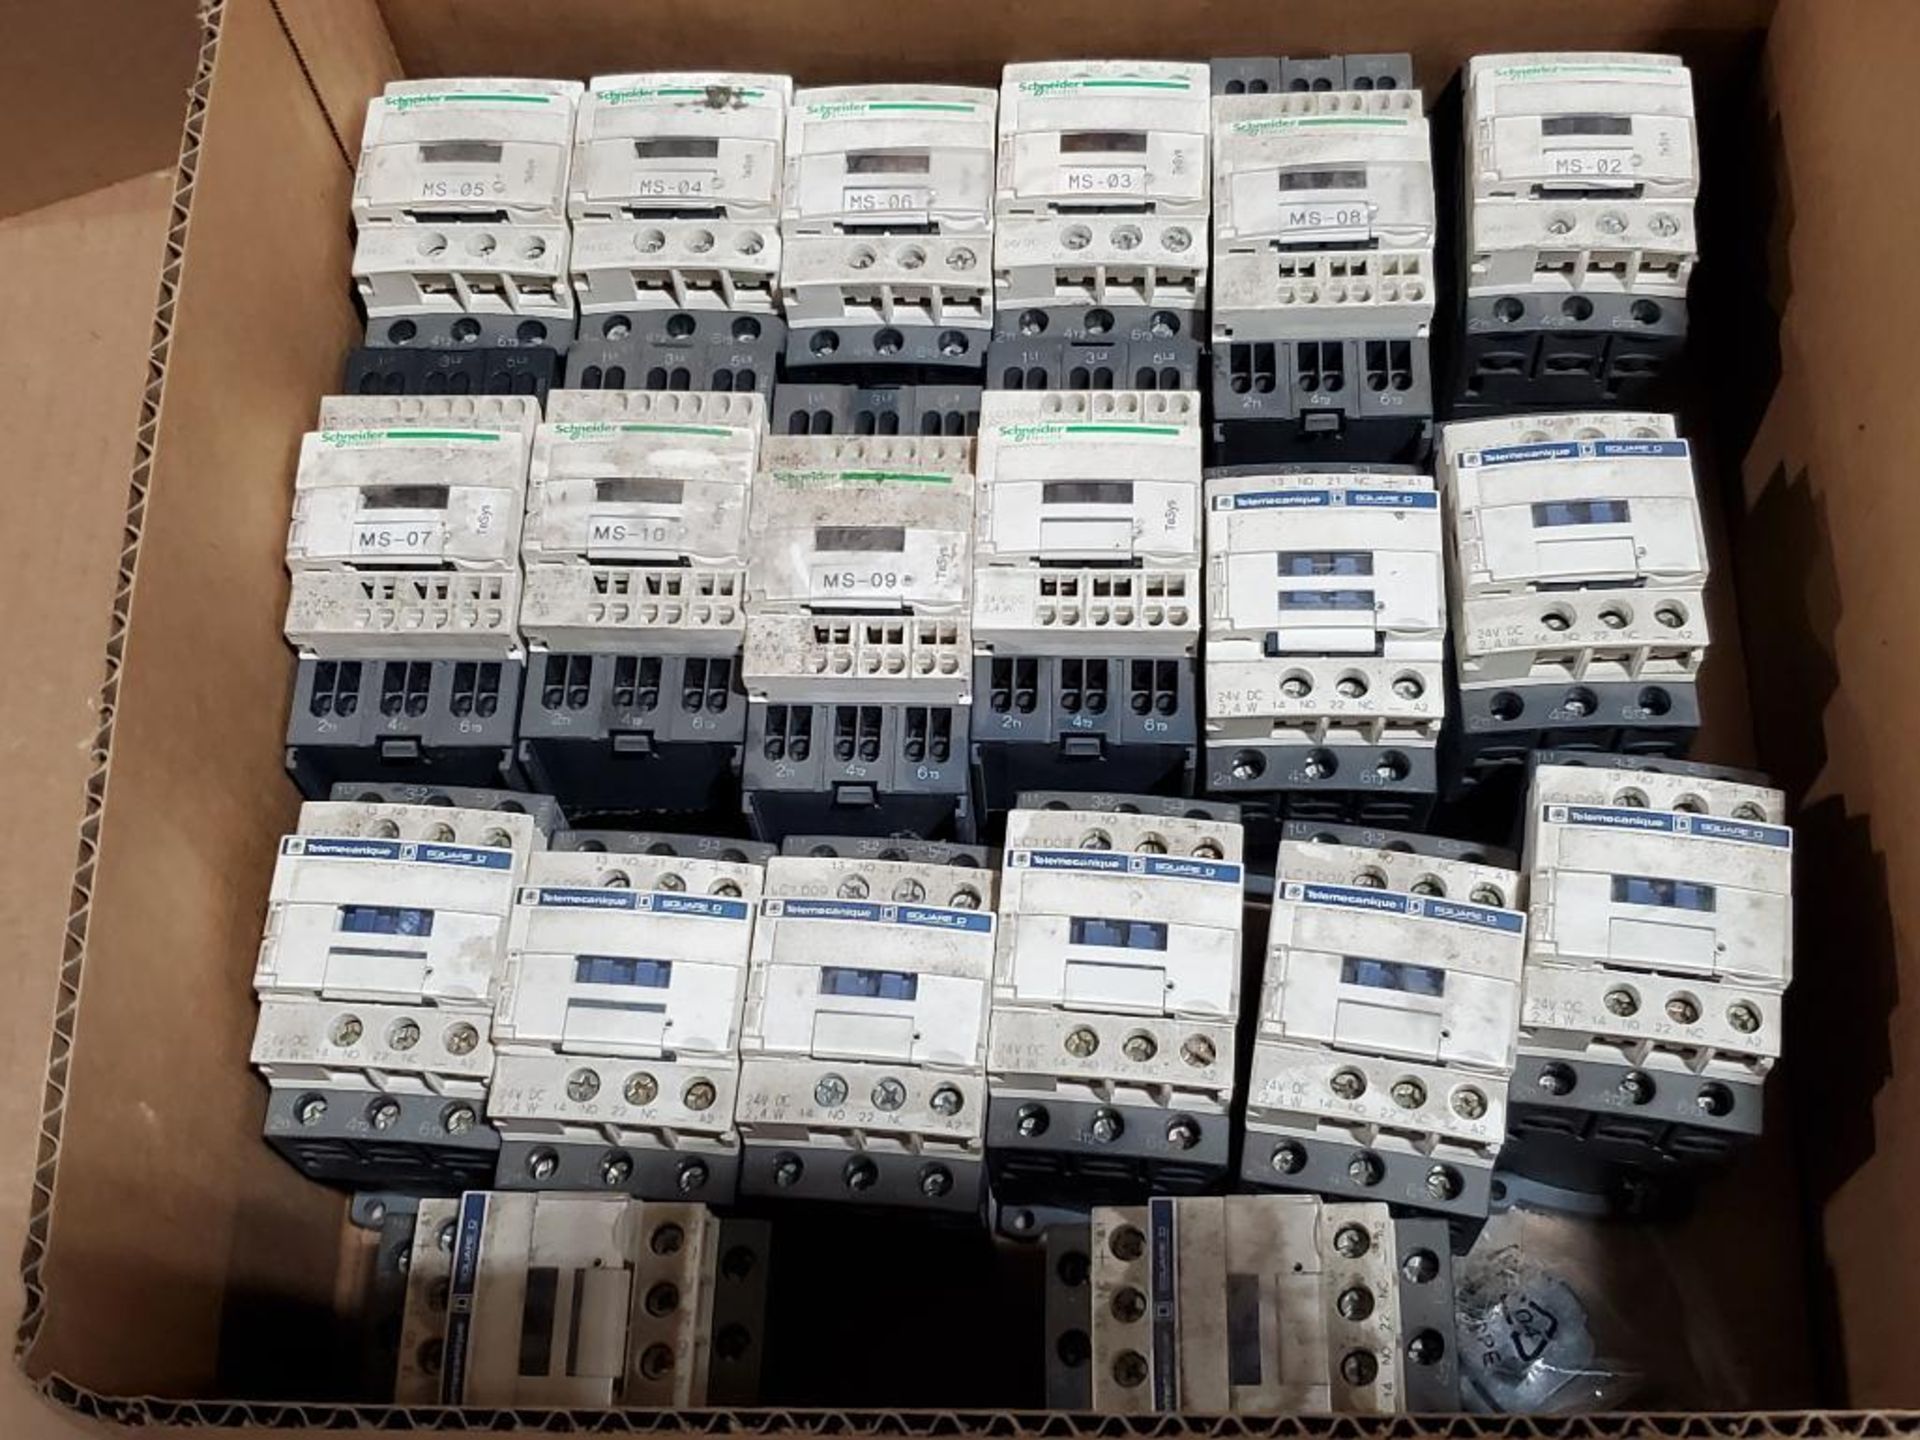 Qty 20 - Telemecanique Square D contactors. - Image 4 of 4